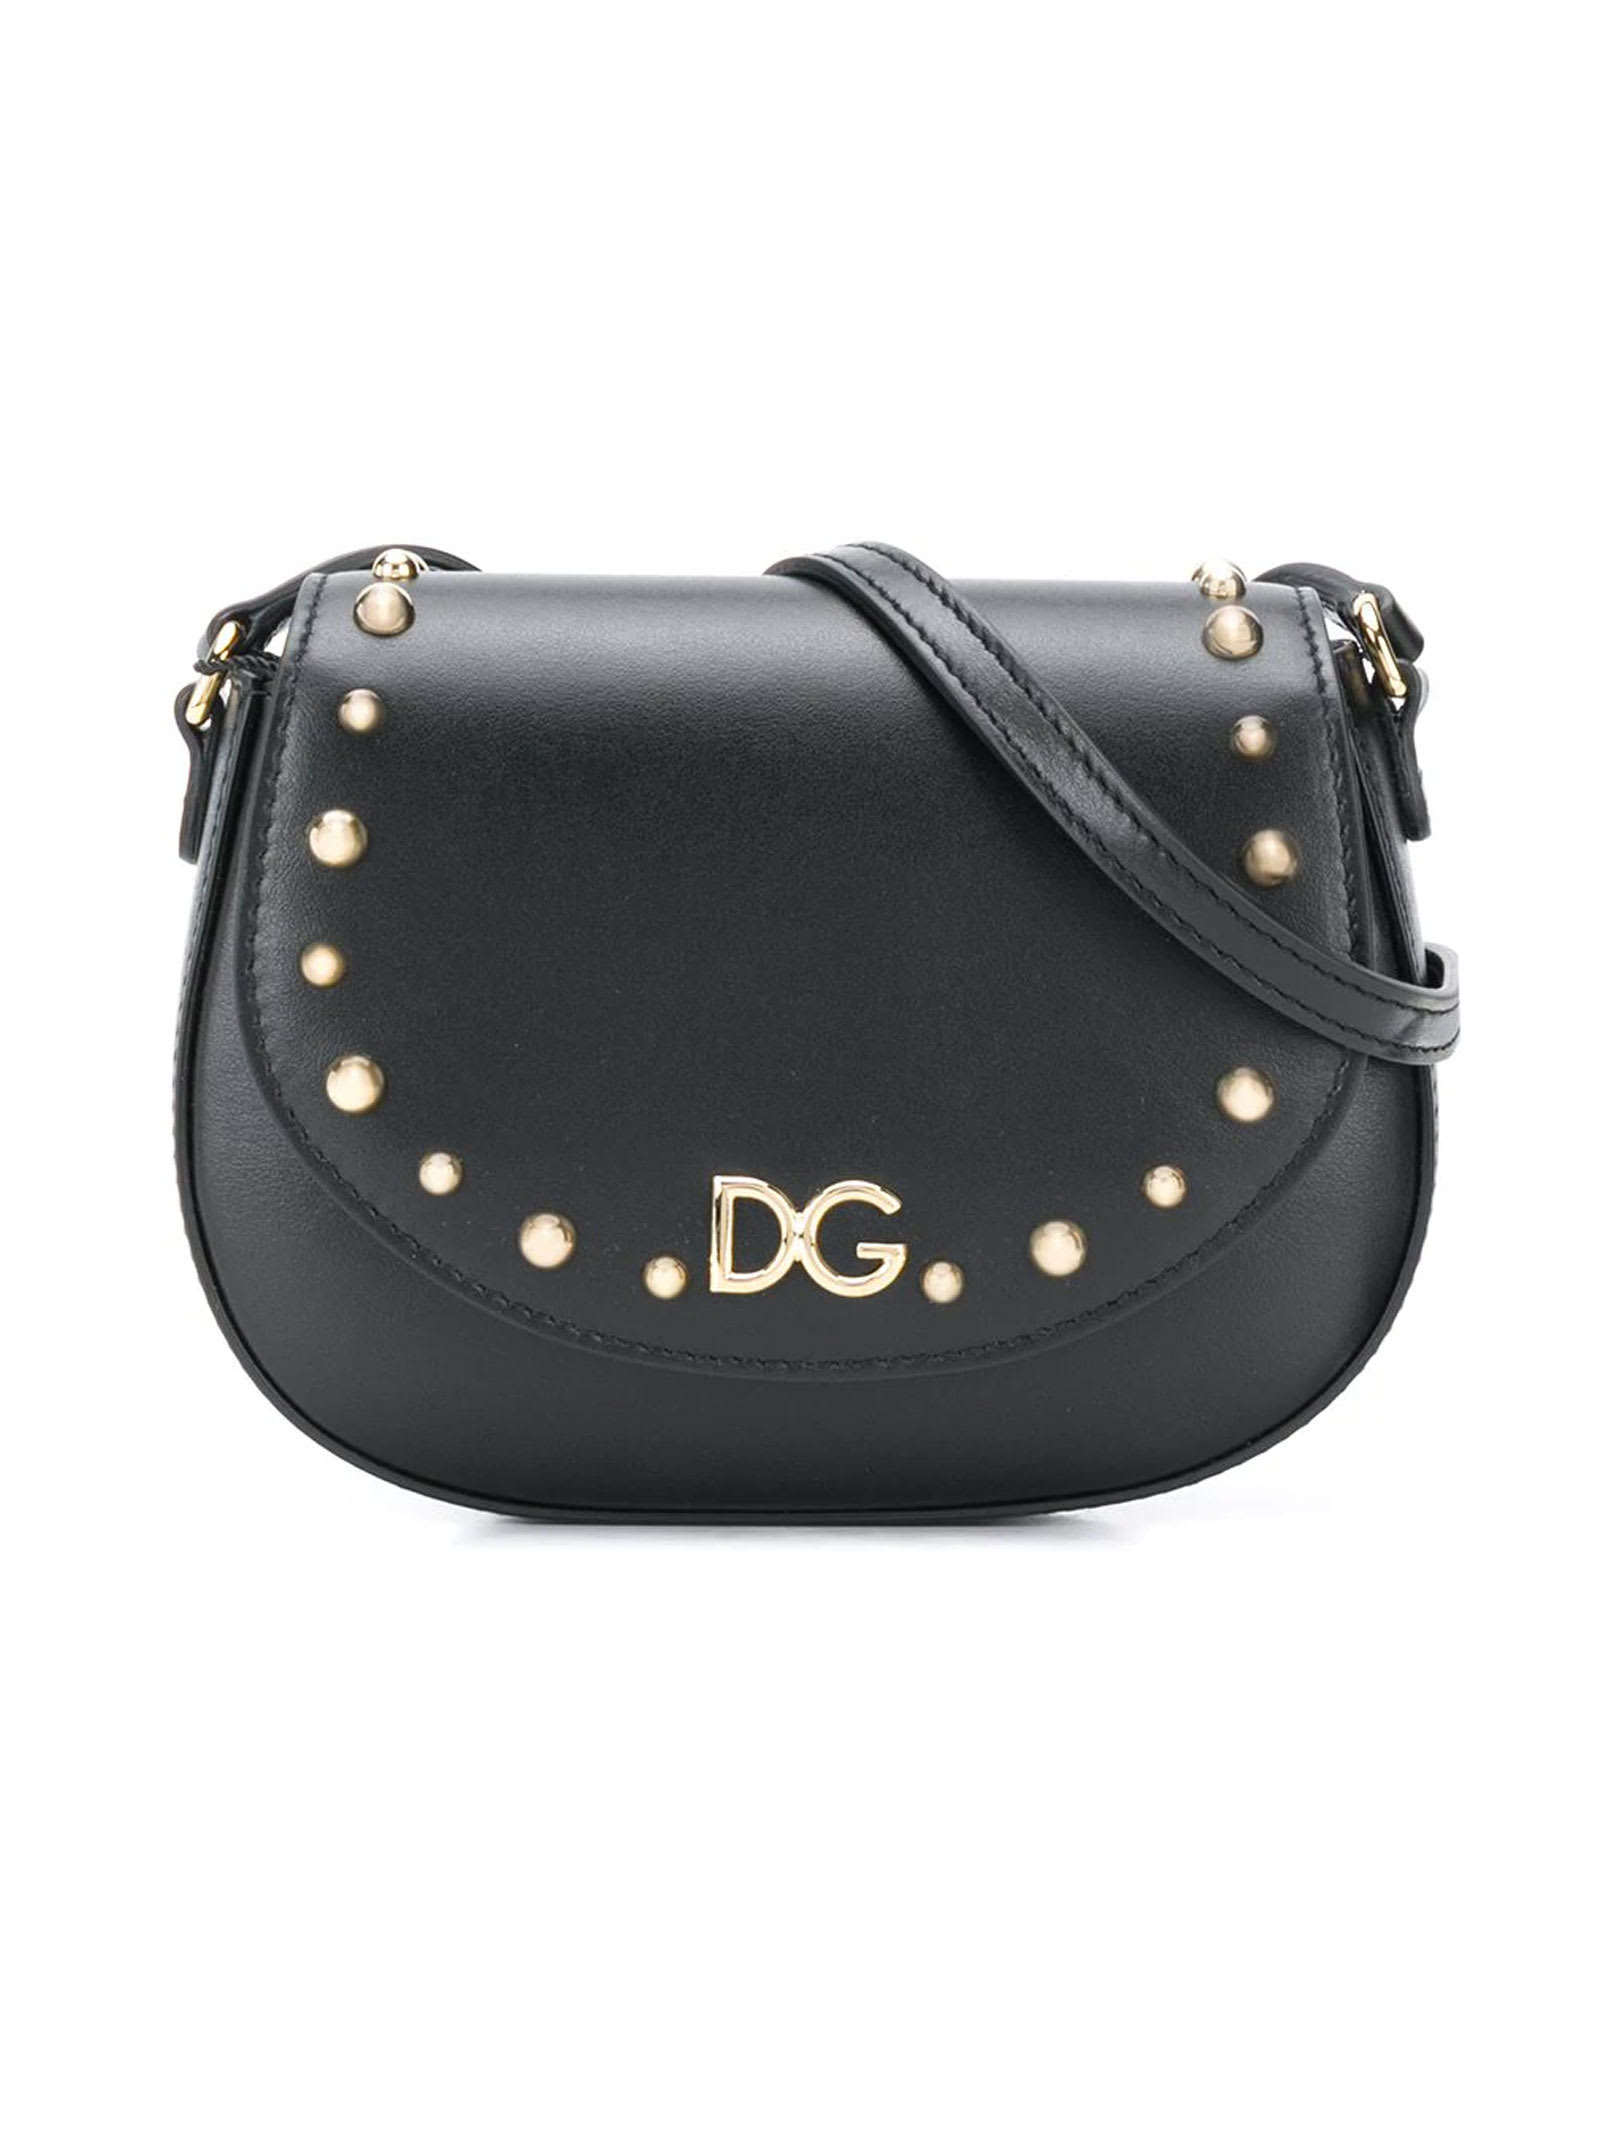 Dolce & Gabbana Black Shoulder Bag Cahier Model Dolce & gabbana Kids